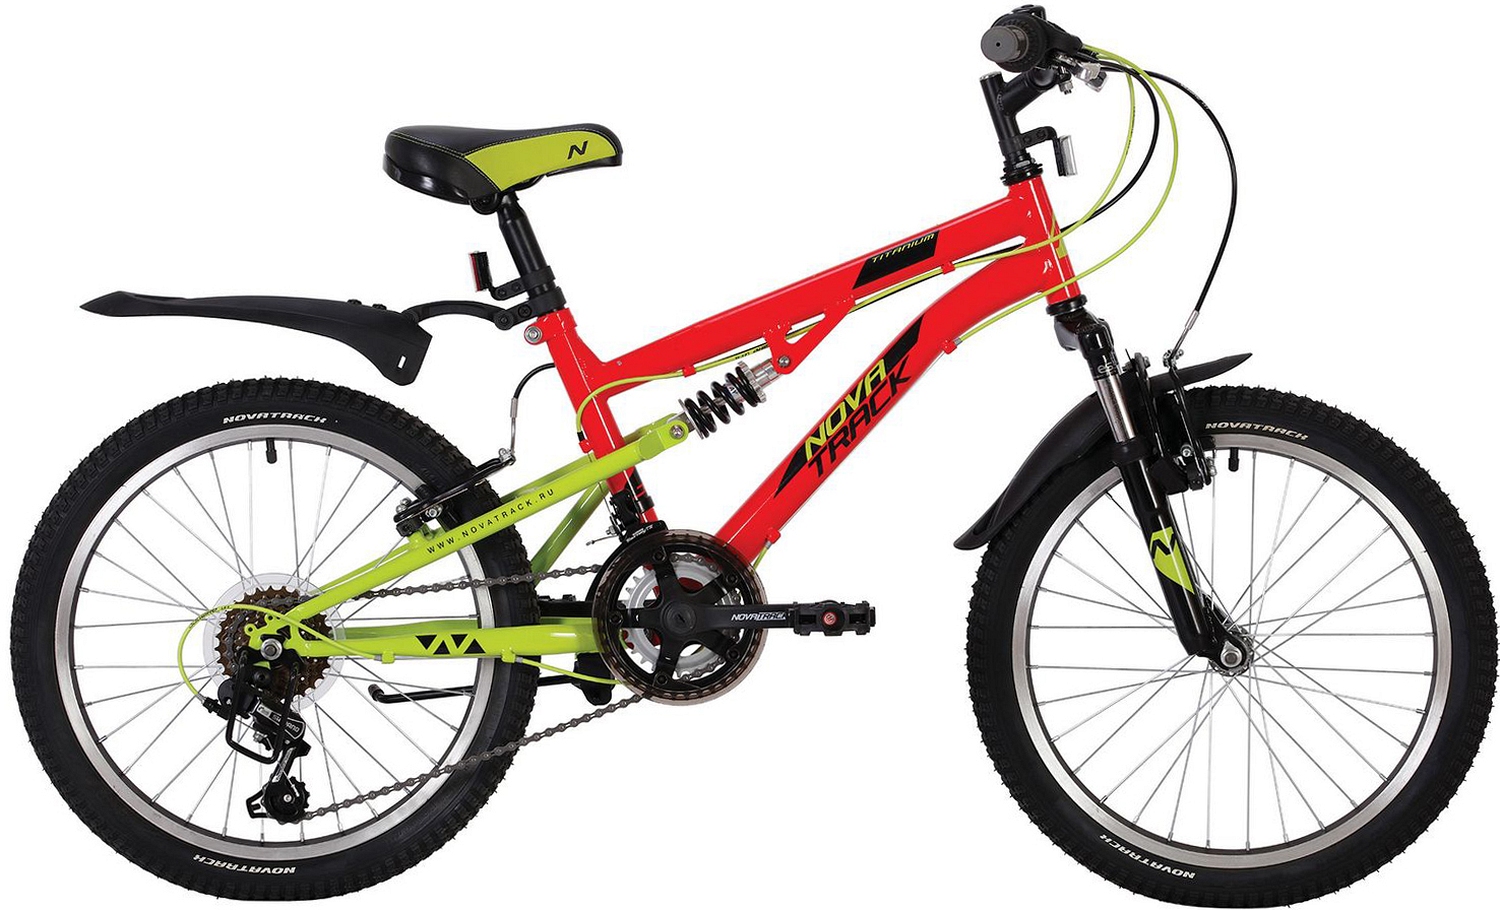  Отзывы о Детском велосипеде Novatrack Titanium 12-sp. 20" 2020 2020